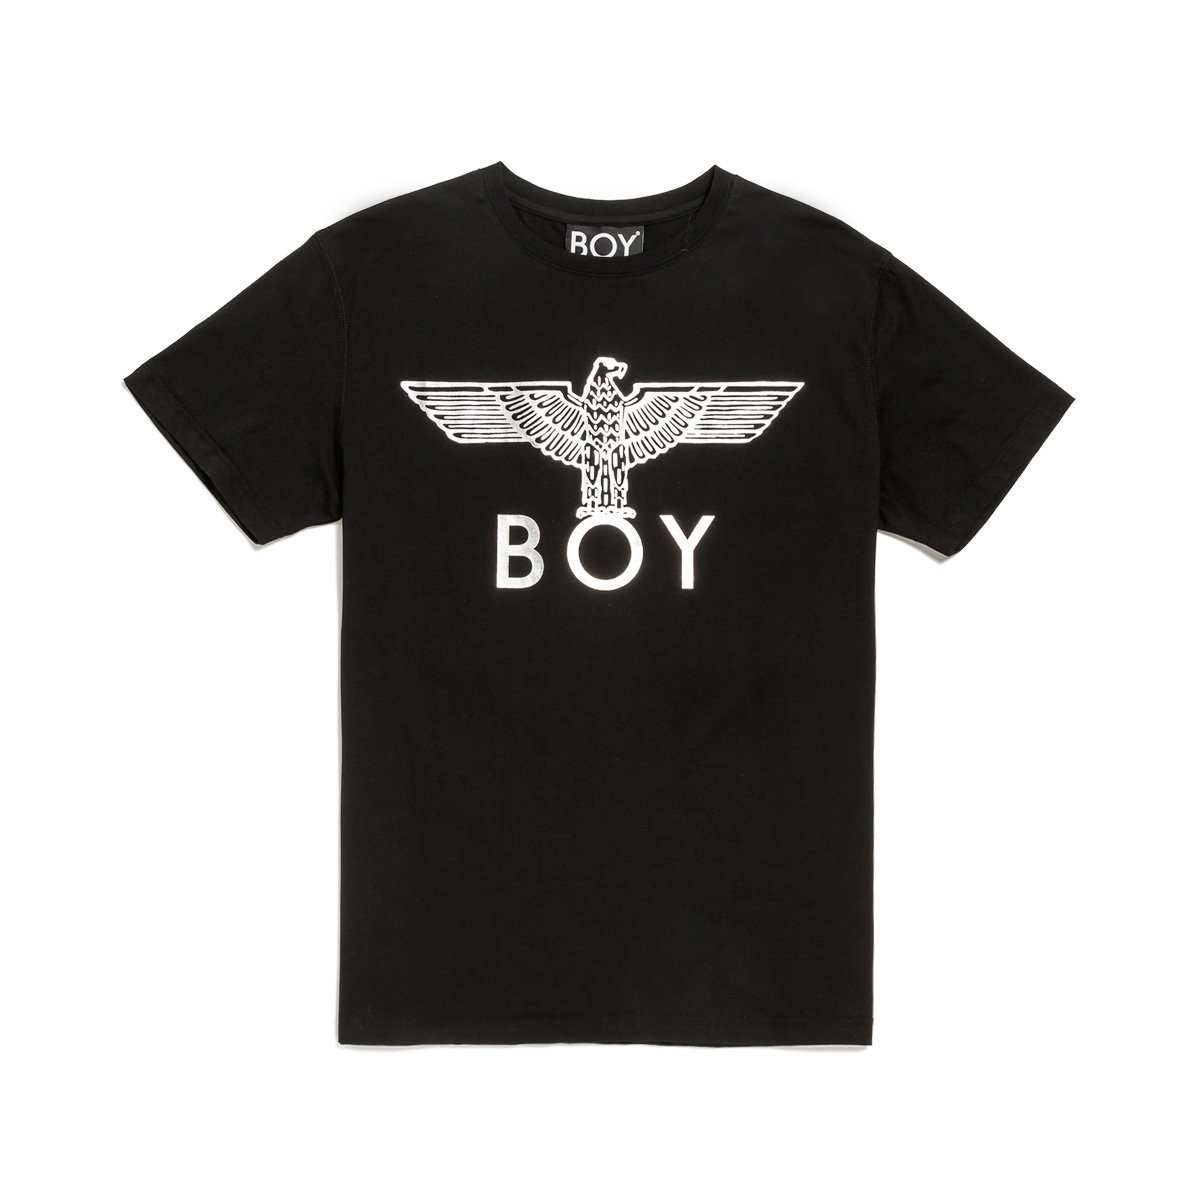 伦敦男孩boy老鹰logo印花短袖情侣款t恤